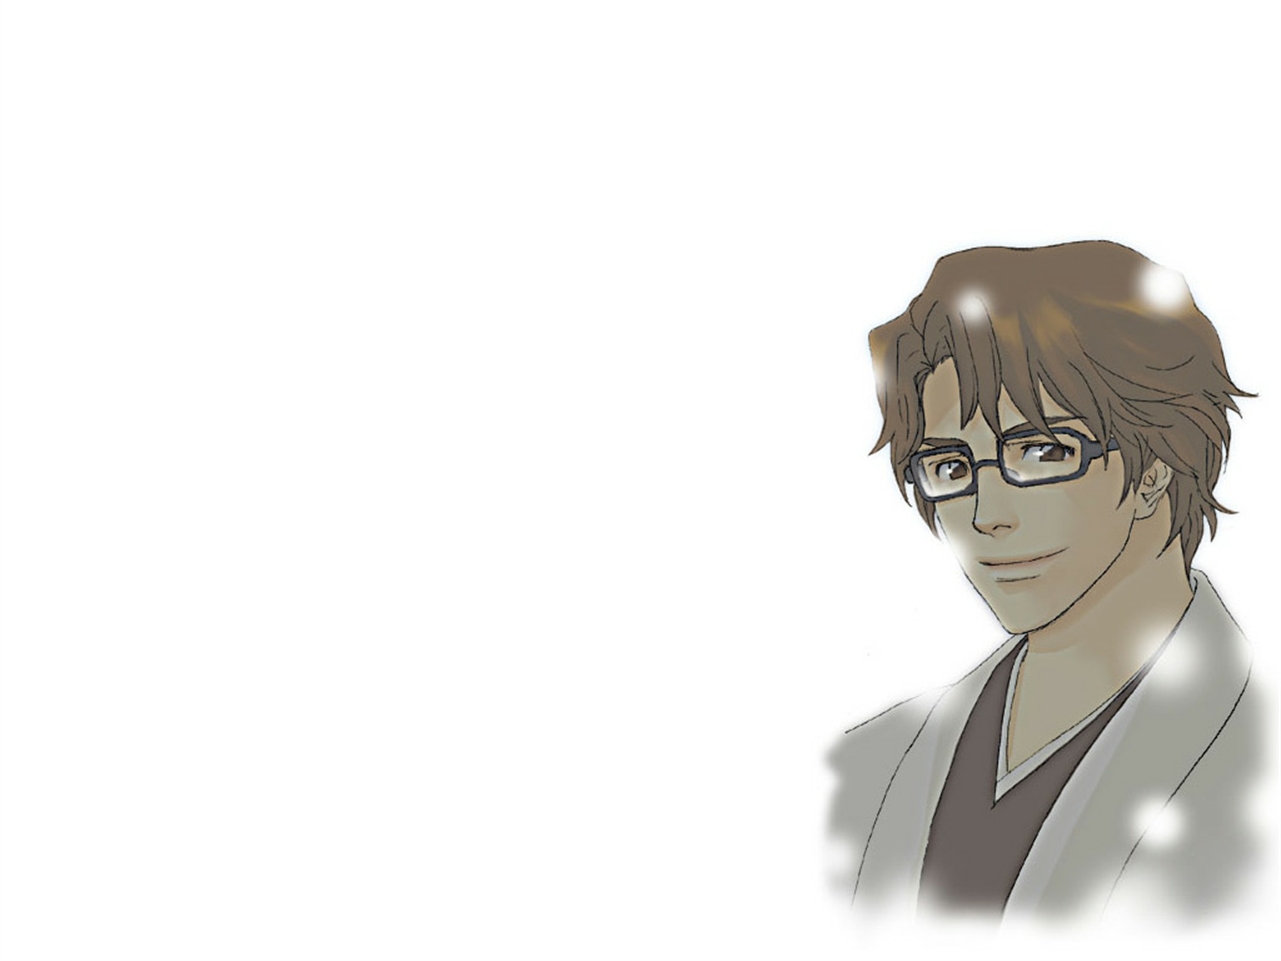 Baixe gratuitamente a imagem Anime, Alvejante, Sousuke Aizen na área de trabalho do seu PC